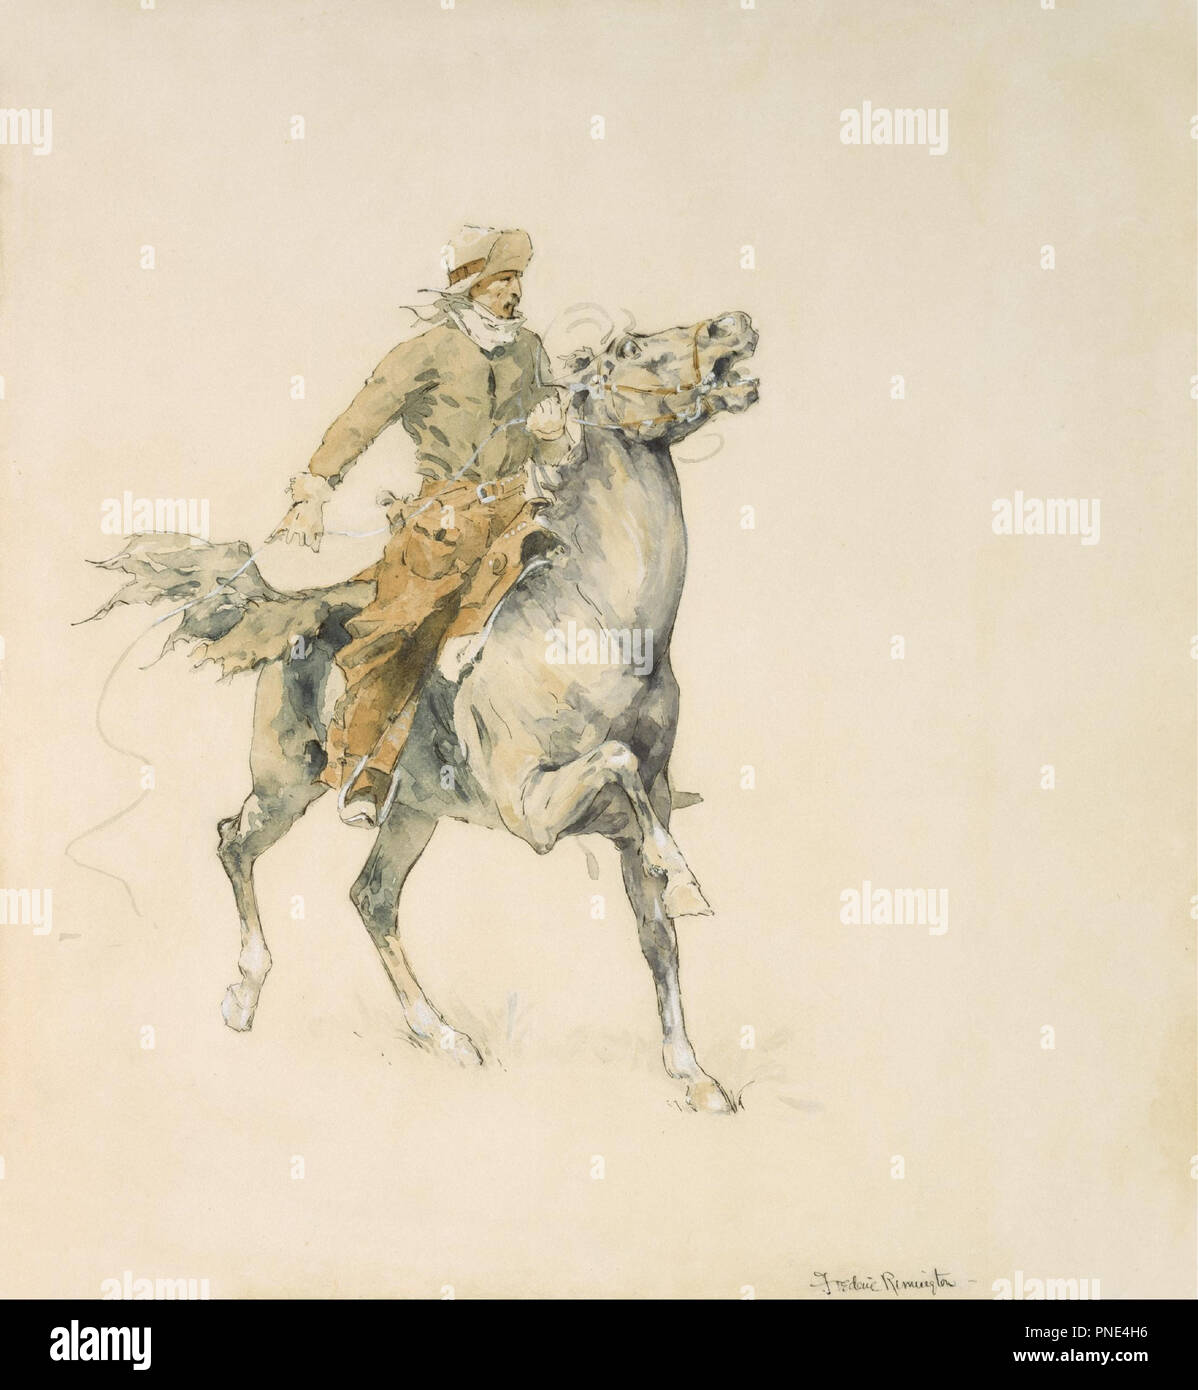 Der Cowboy. Datum/Zeitraum: 1895/1899. Aquarell auf Papier. Breite: 33 cm. Höhe: 44,5 cm (Blatt). Autor: Frederic Remington. Stockfoto